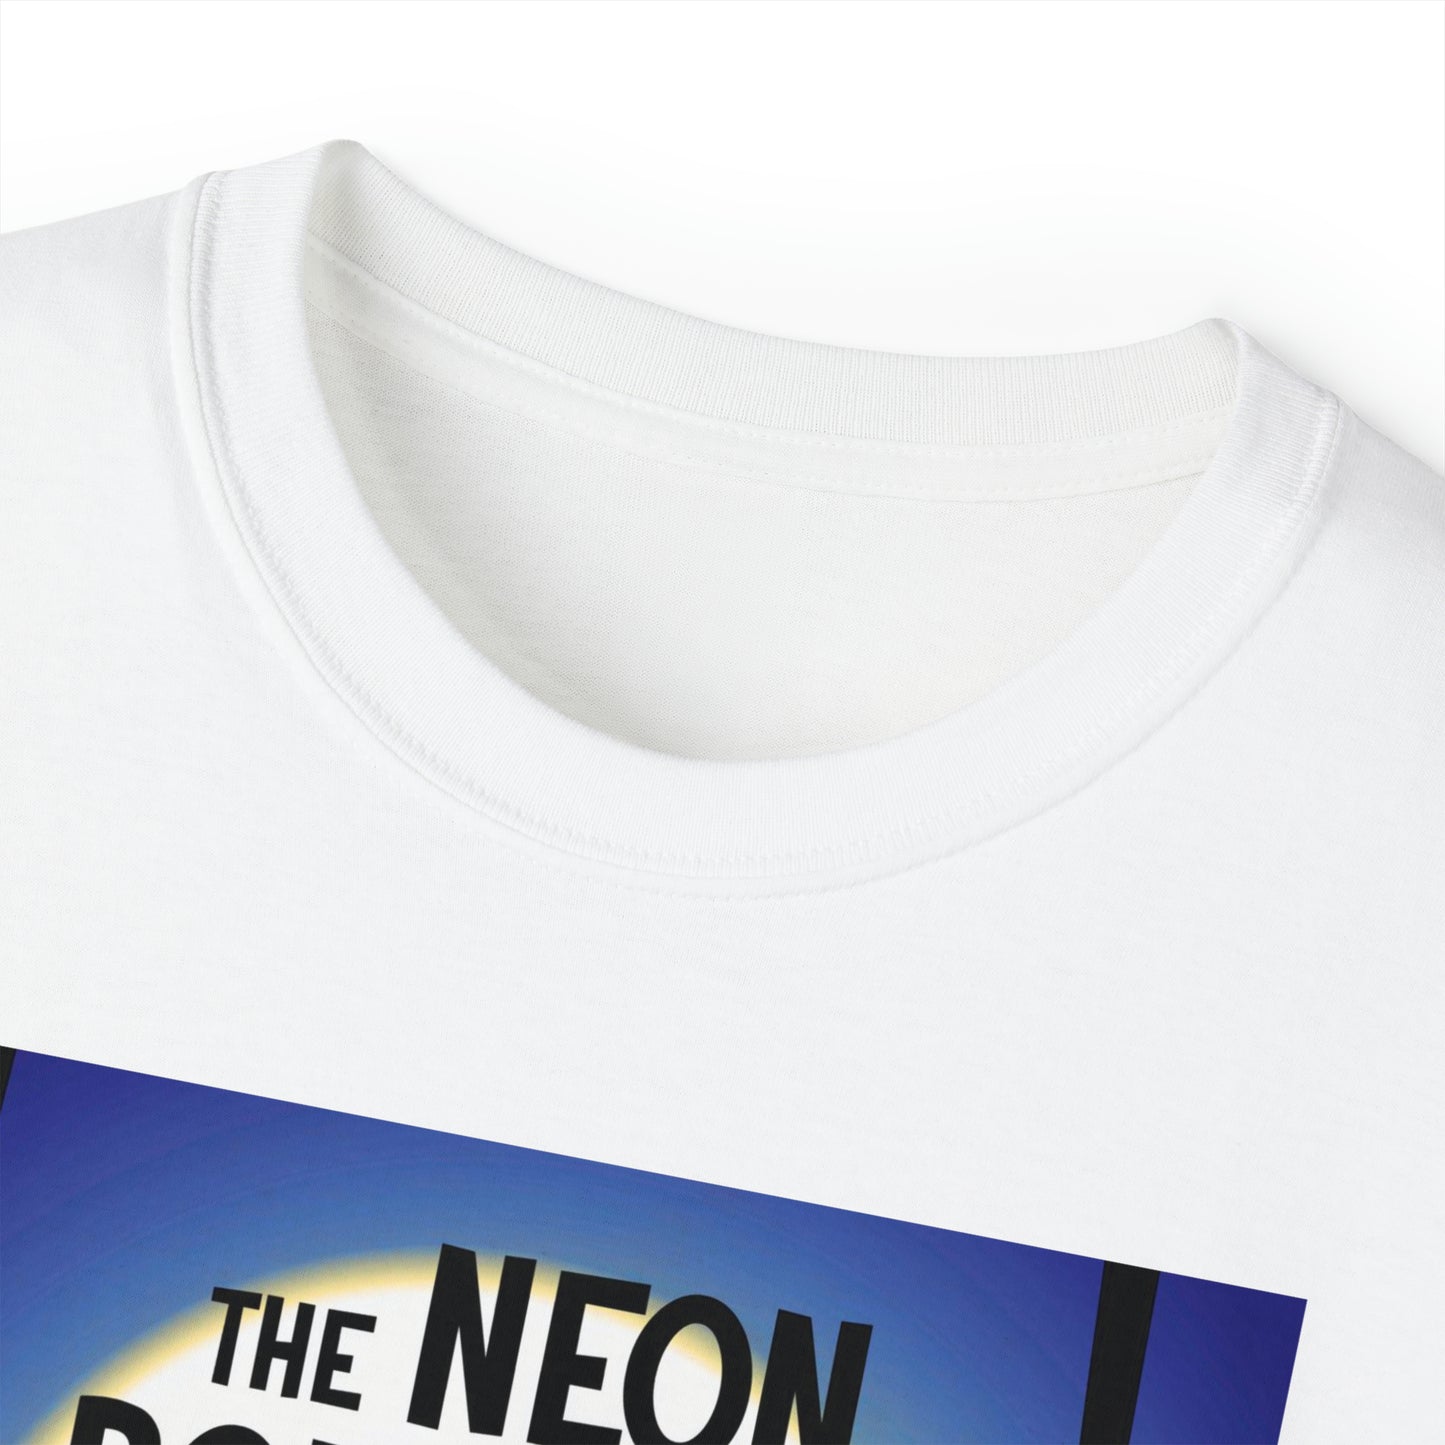 The Neon Boneyard - Unisex T-Shirt